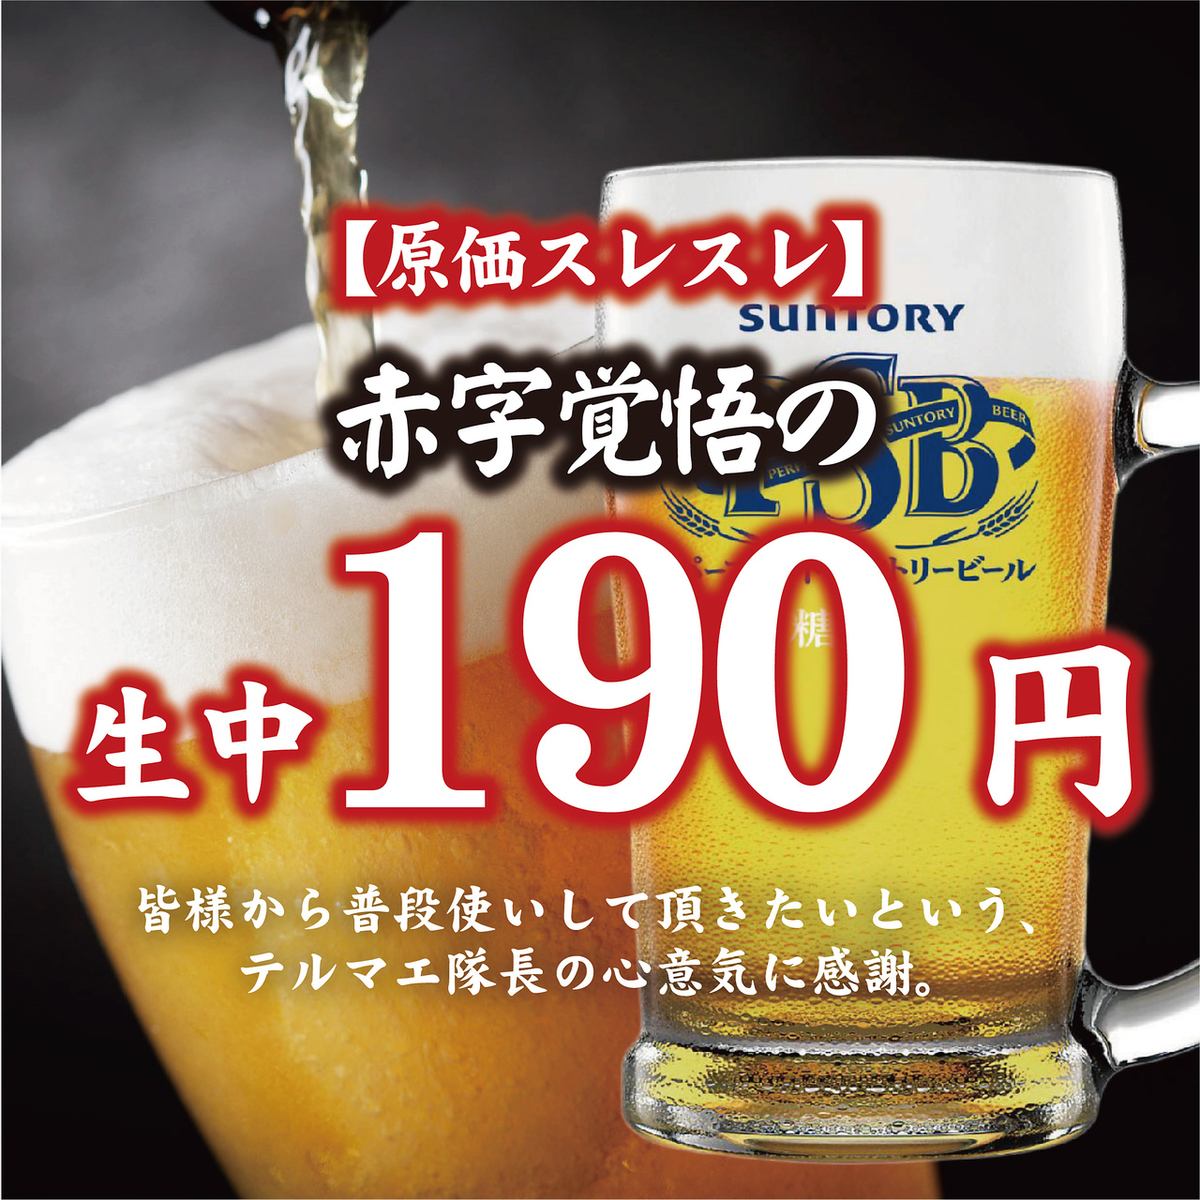 生啤酒190日元，做好虧本的心理準備吧！便宜又有趣的超值回報♪